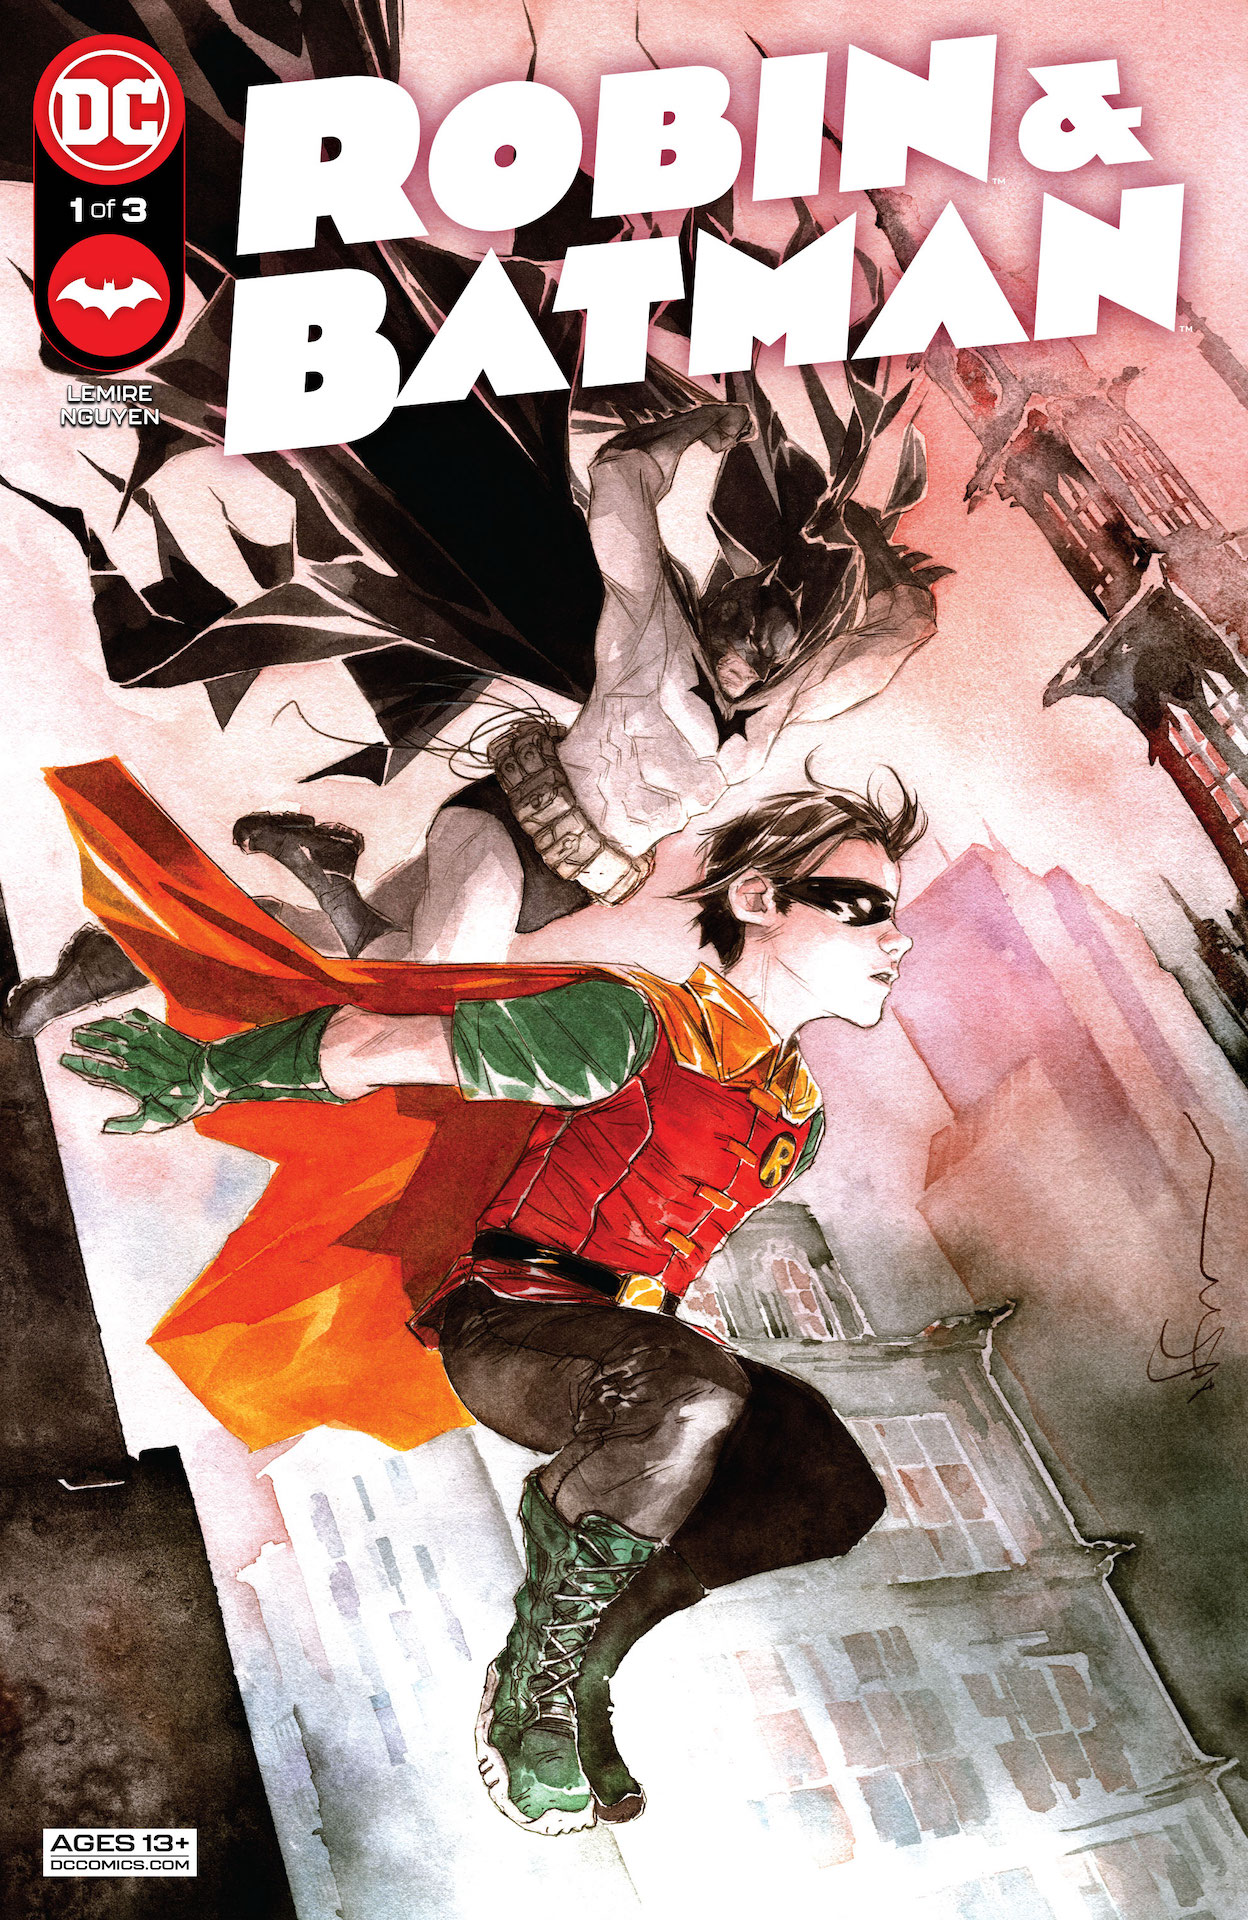 DC Preview: Robin & Batman #1